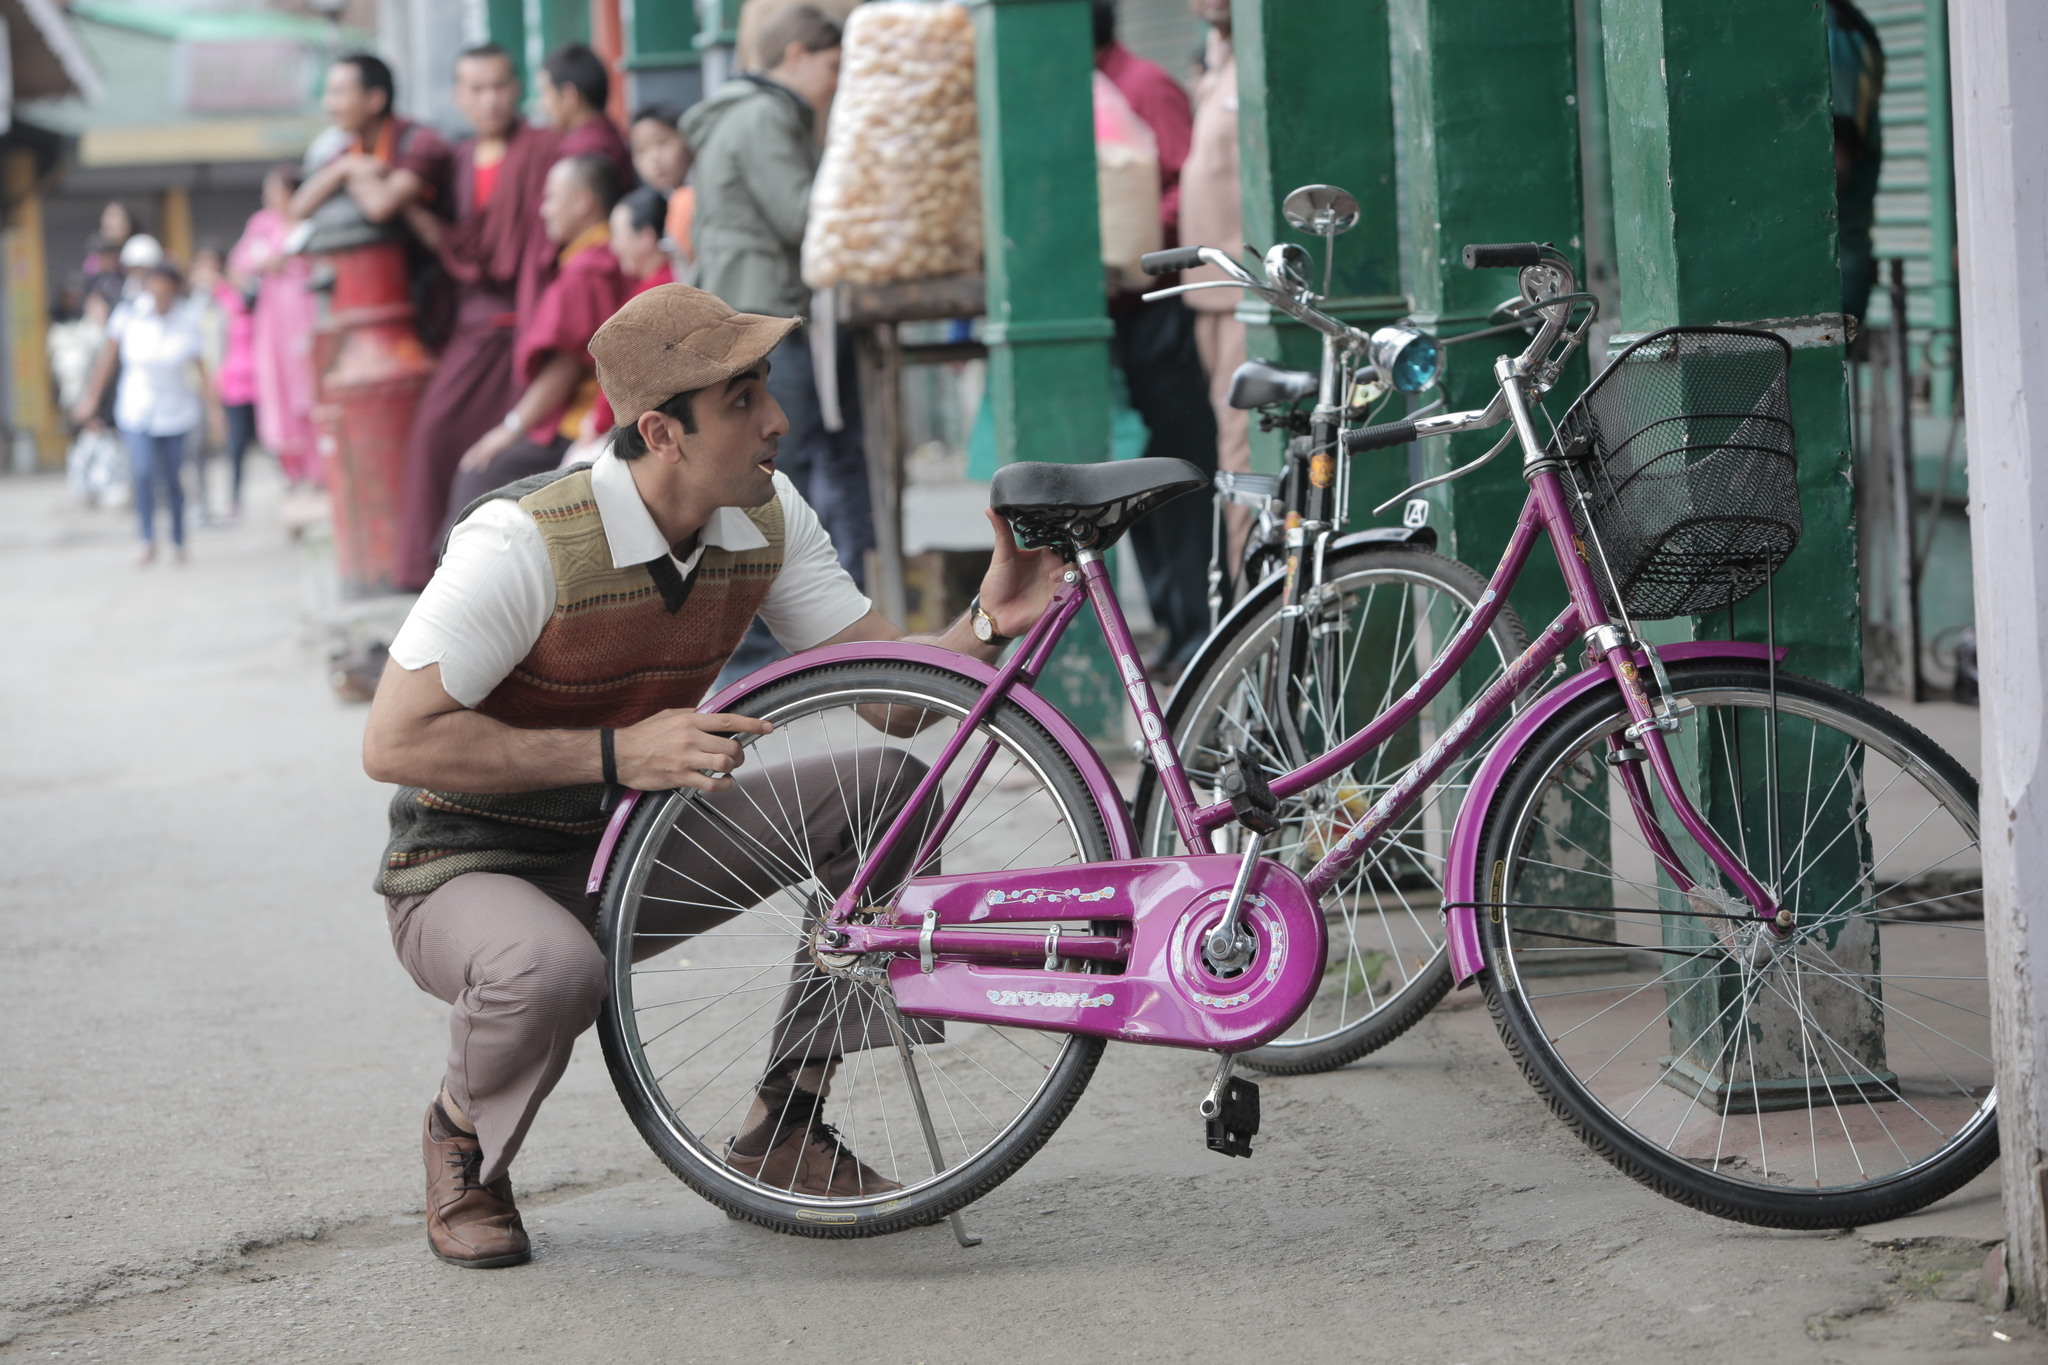 Still of Ranbir Kapoor in Barfi! (2012)